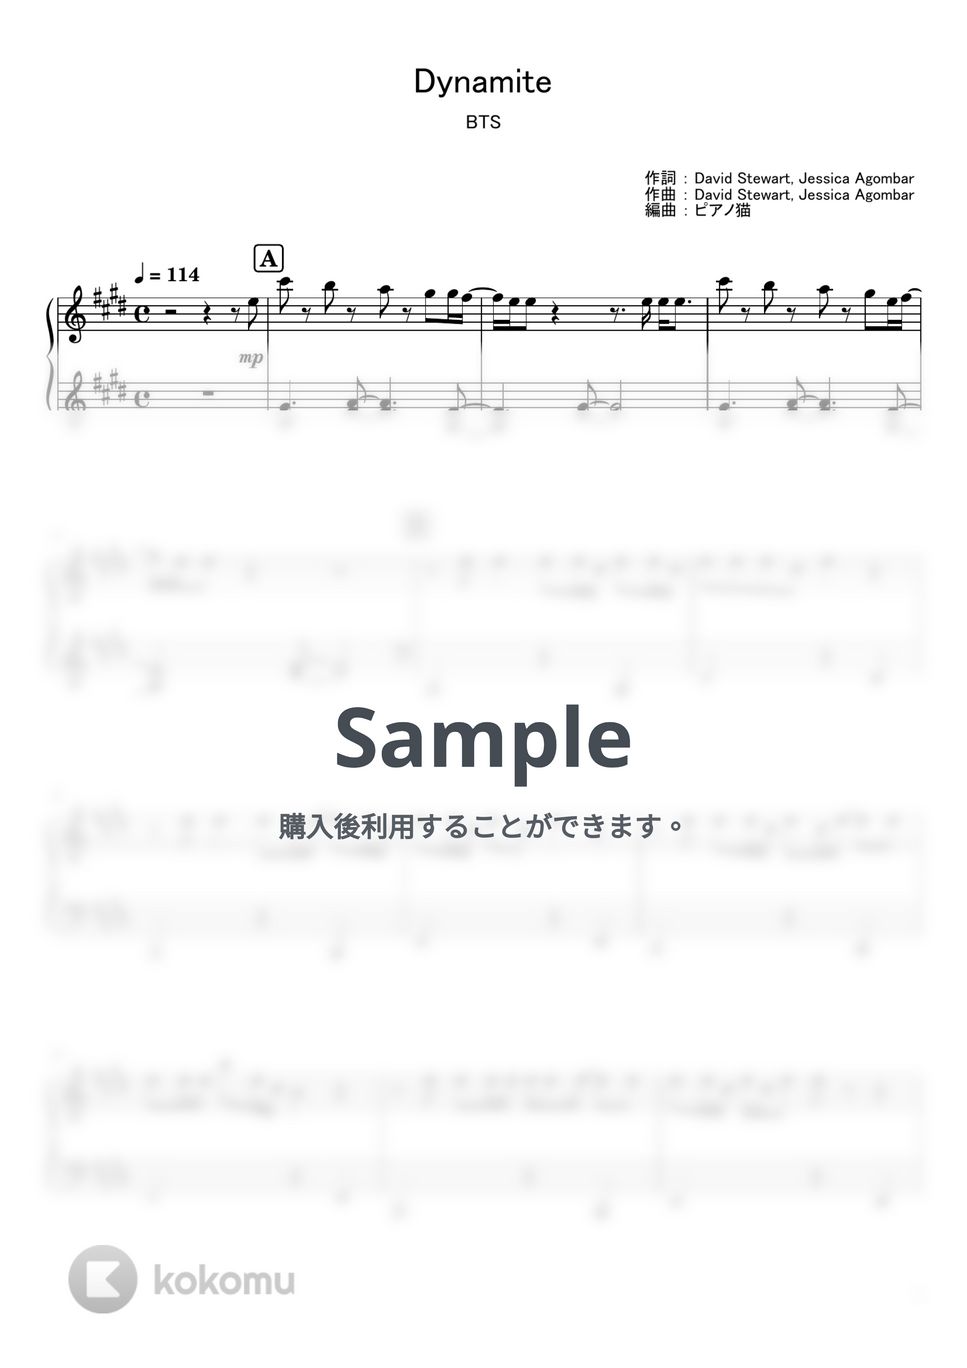 防弾少年団(BTS) - Dynamite (ピアノ / 楽譜 / BTS) by ピアノ猫